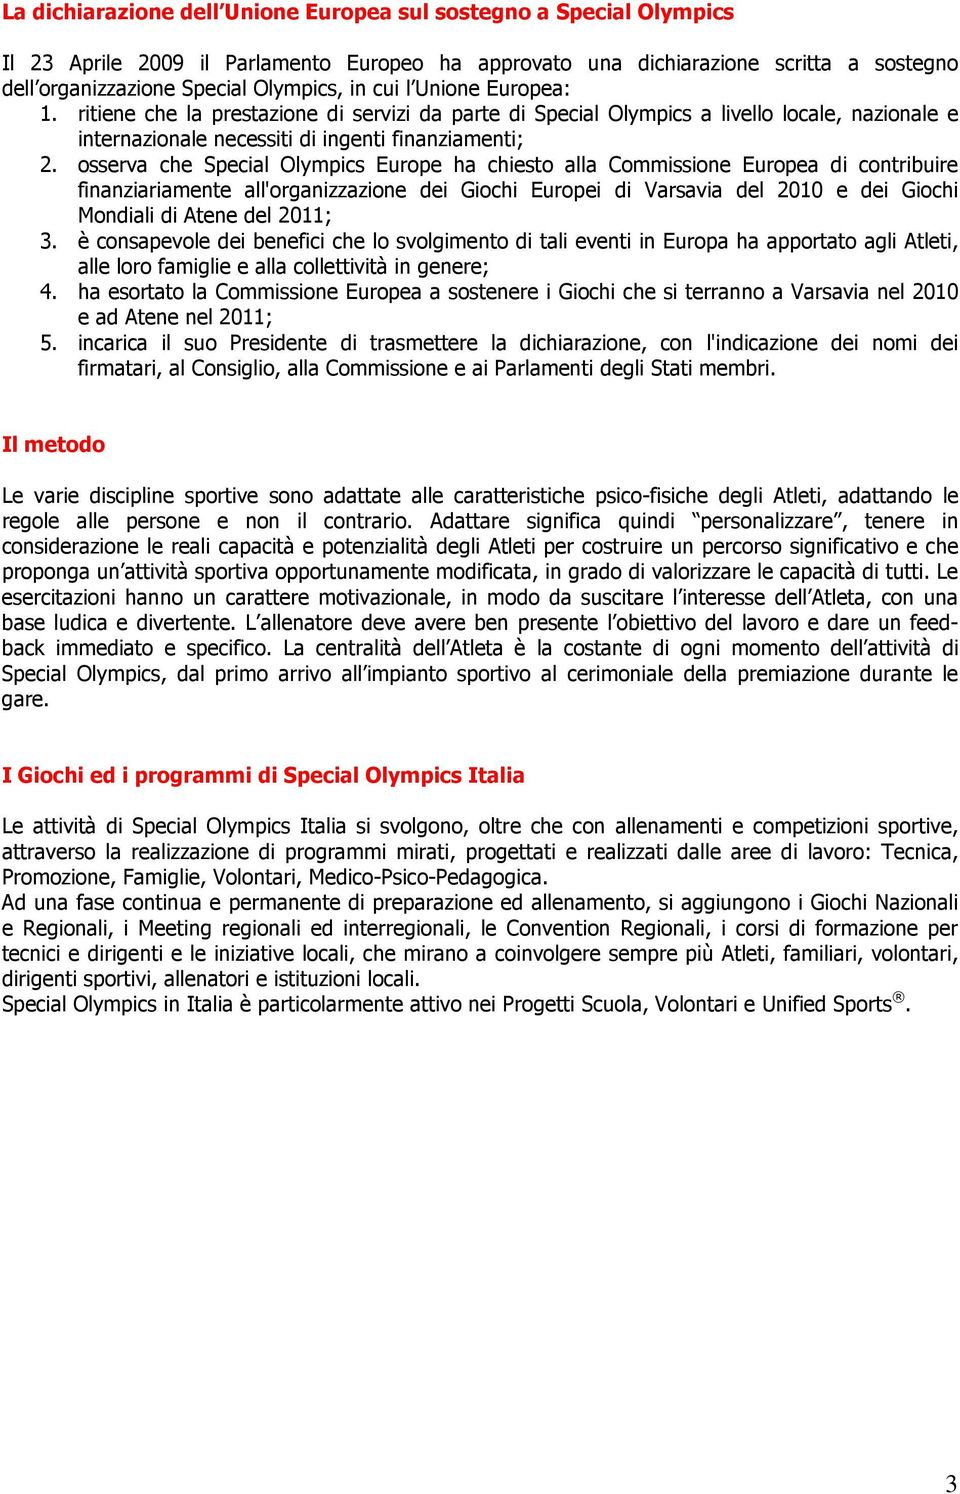 osserva che Special Olympics Europe ha chiesto alla Commissione Europea di contribuire finanziariamente all'organizzazione dei Giochi Europei di Varsavia del 2010 e dei Giochi Mondiali di Atene del